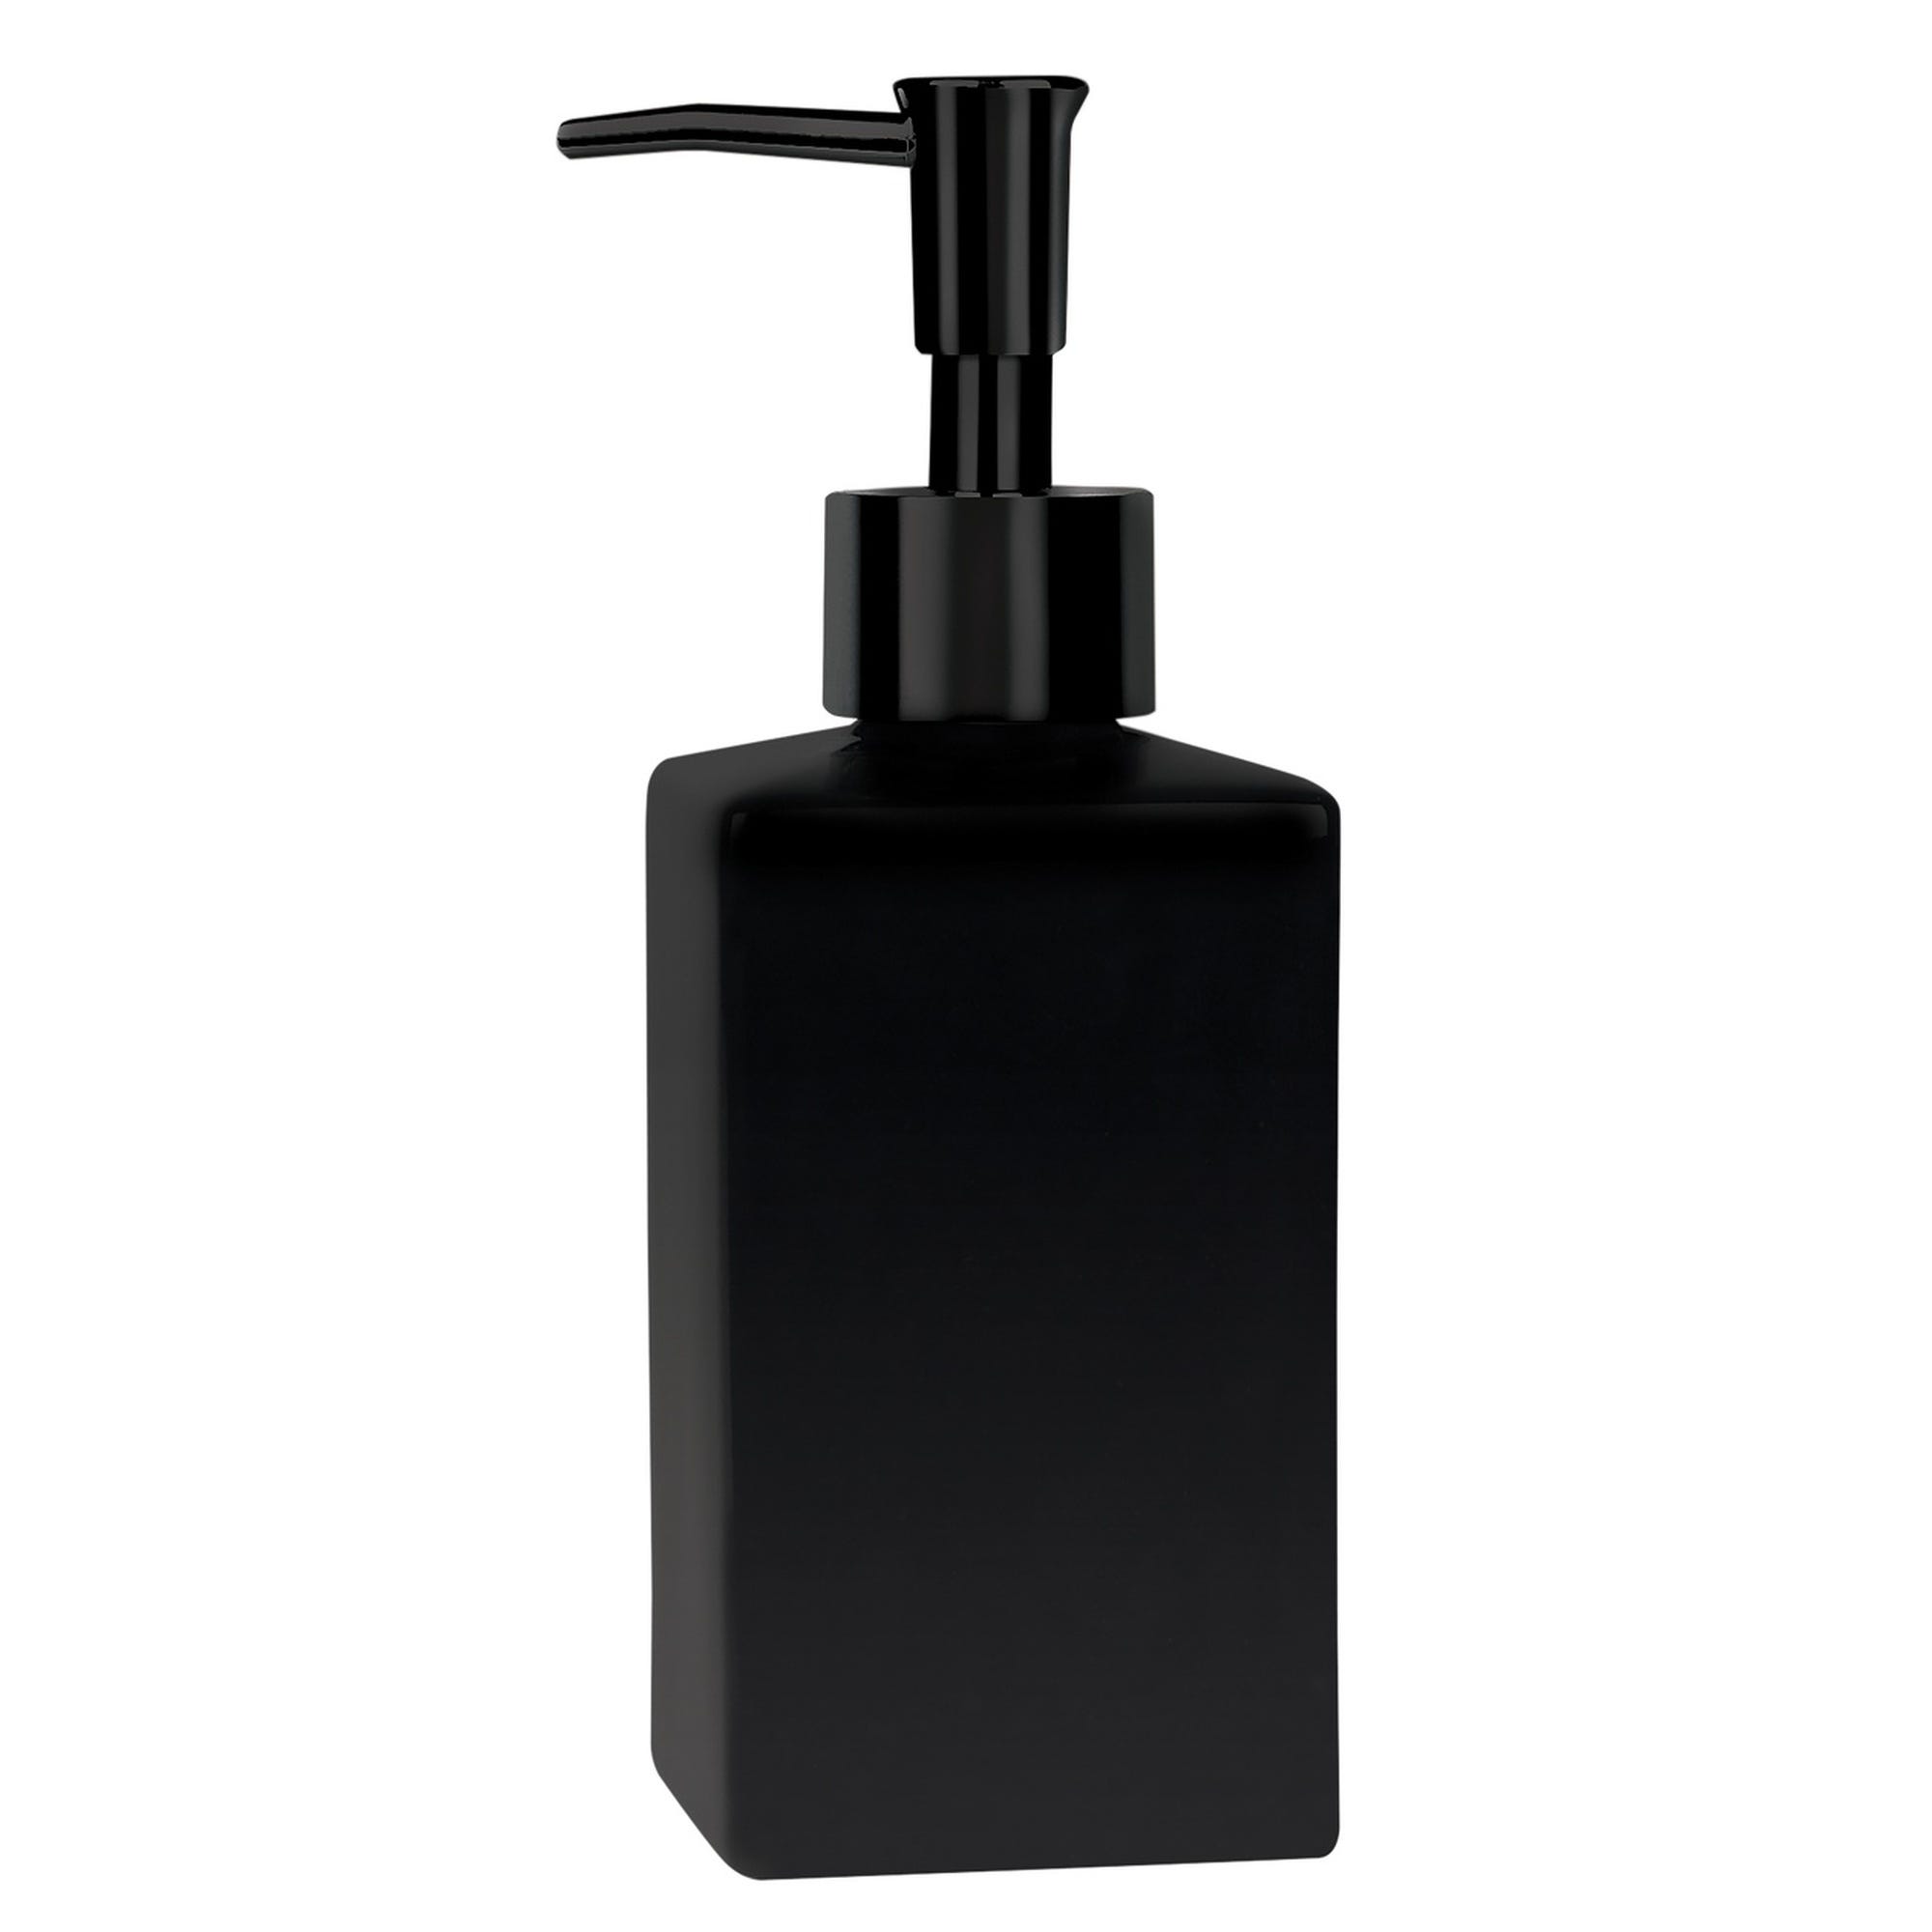 Dosificador jabón pared serie argos negro